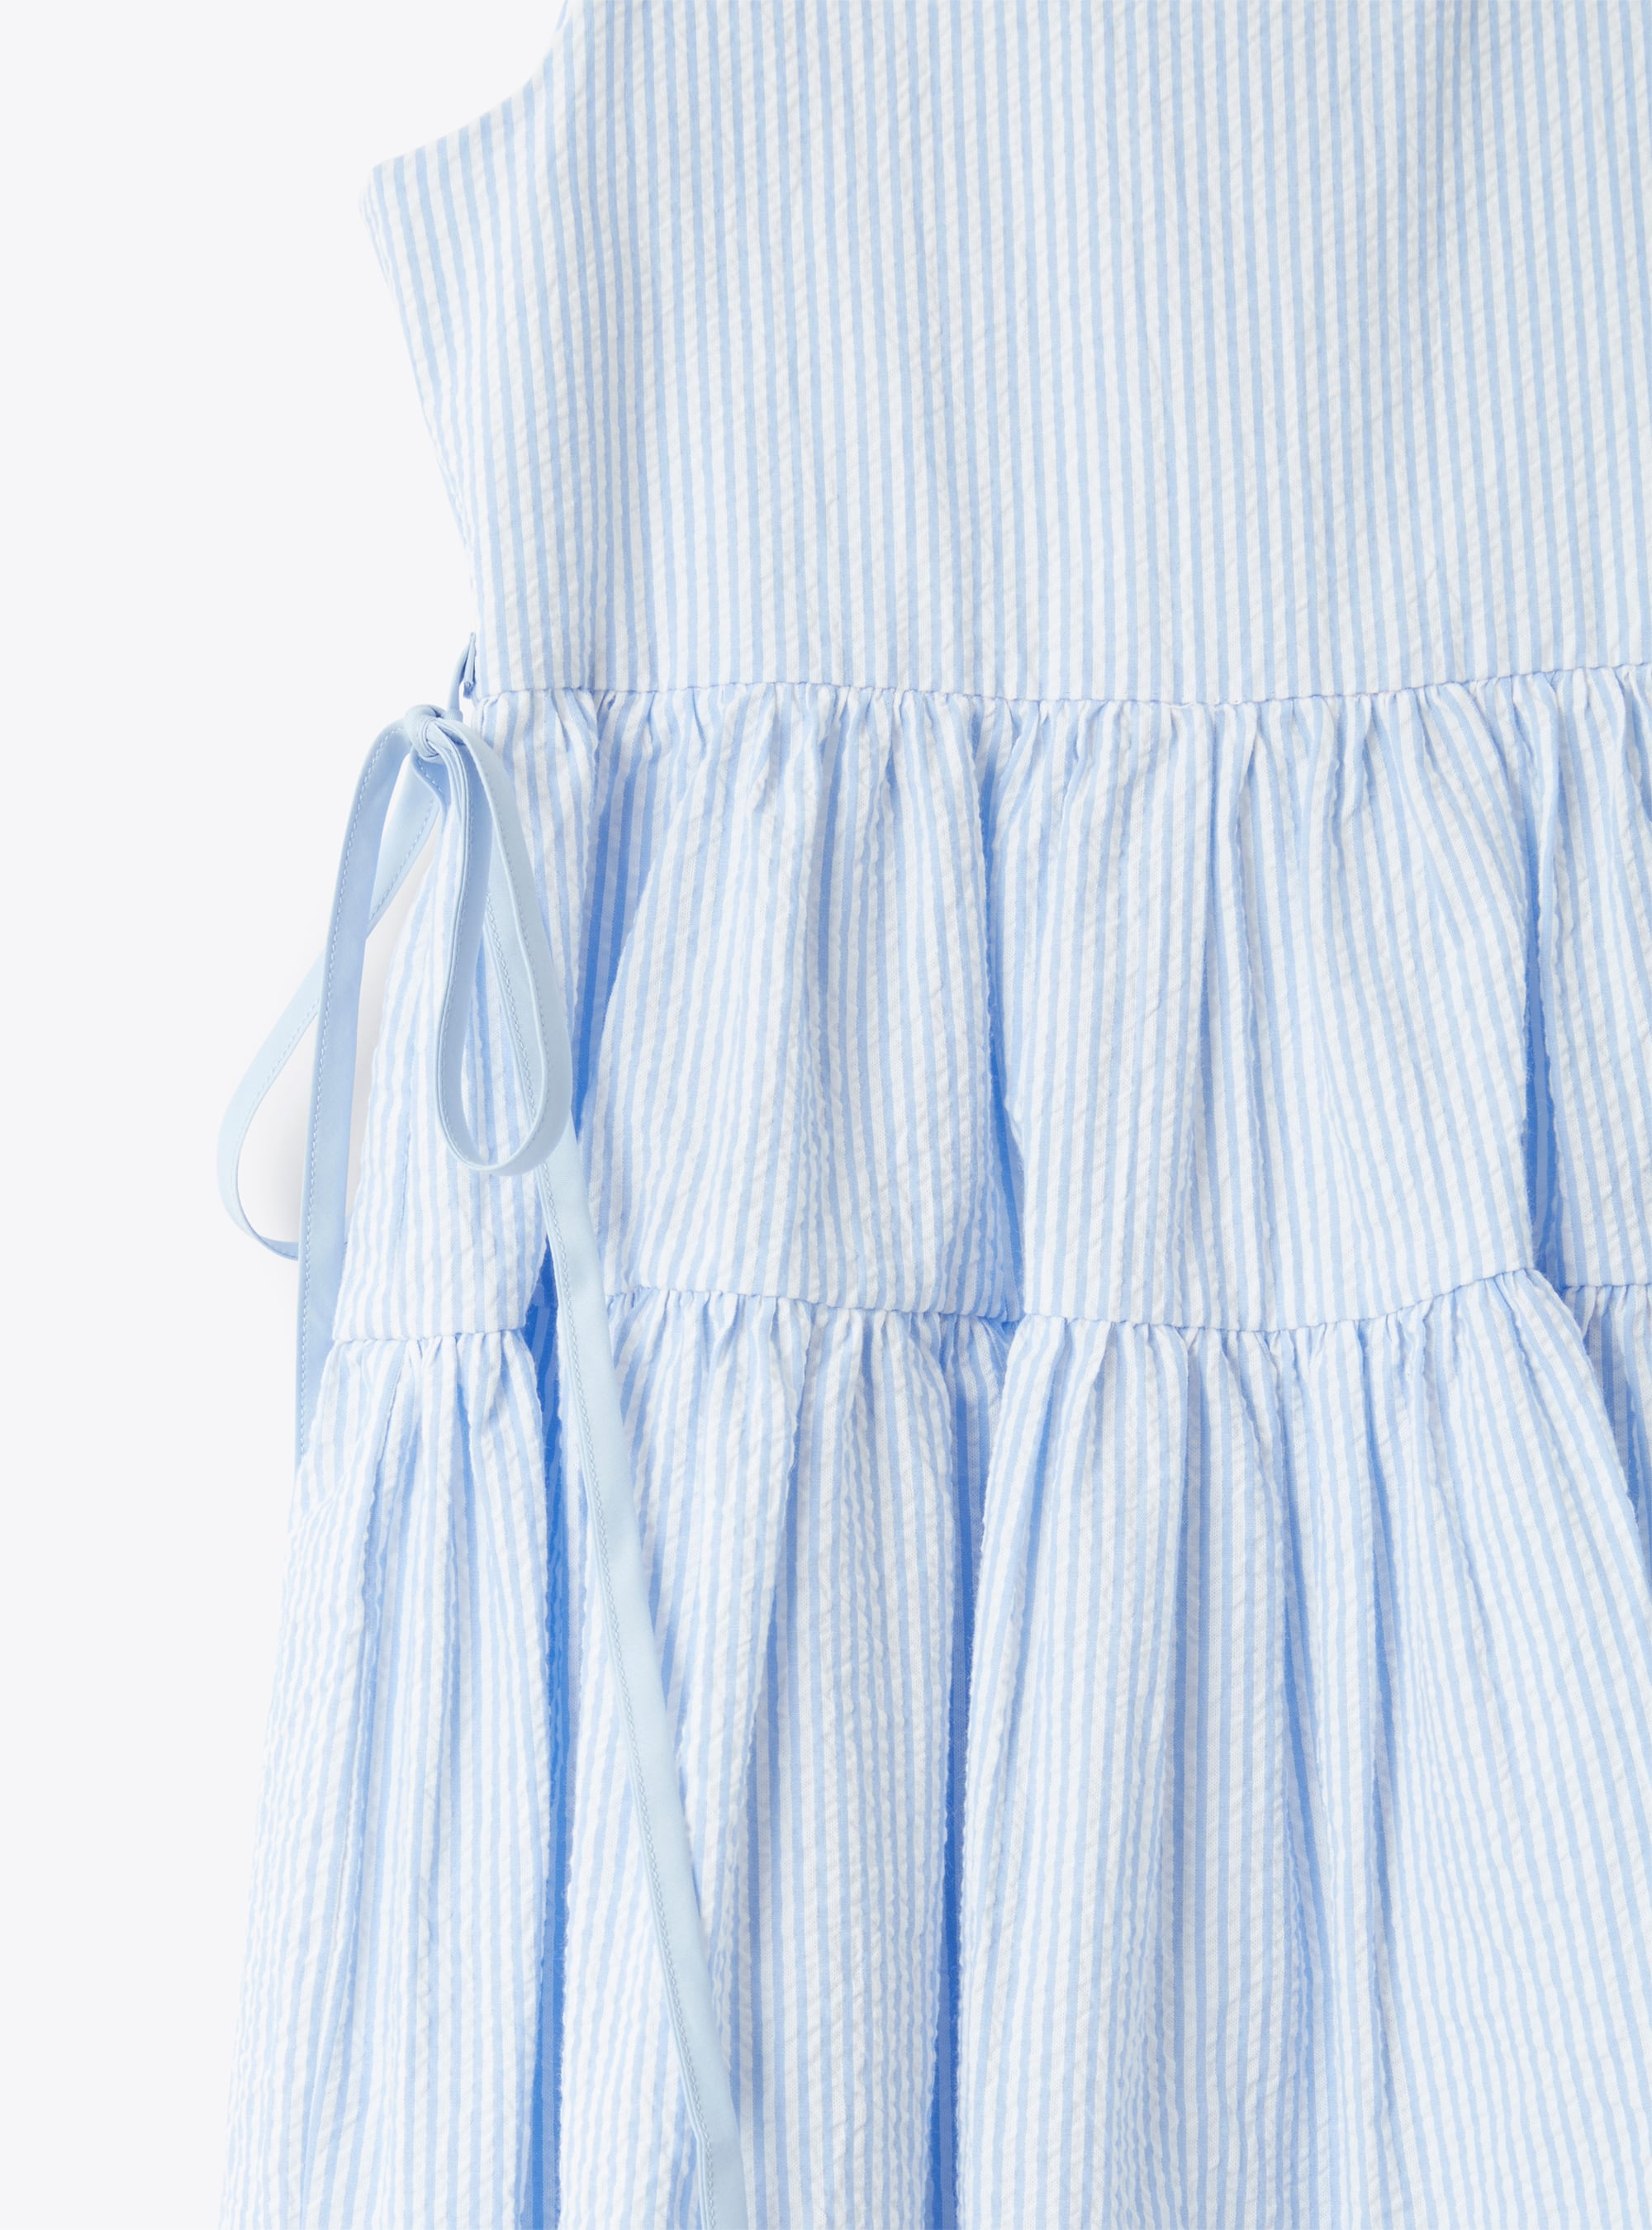 Sleeveless dress in striped seersucker - Light blue | Il Gufo